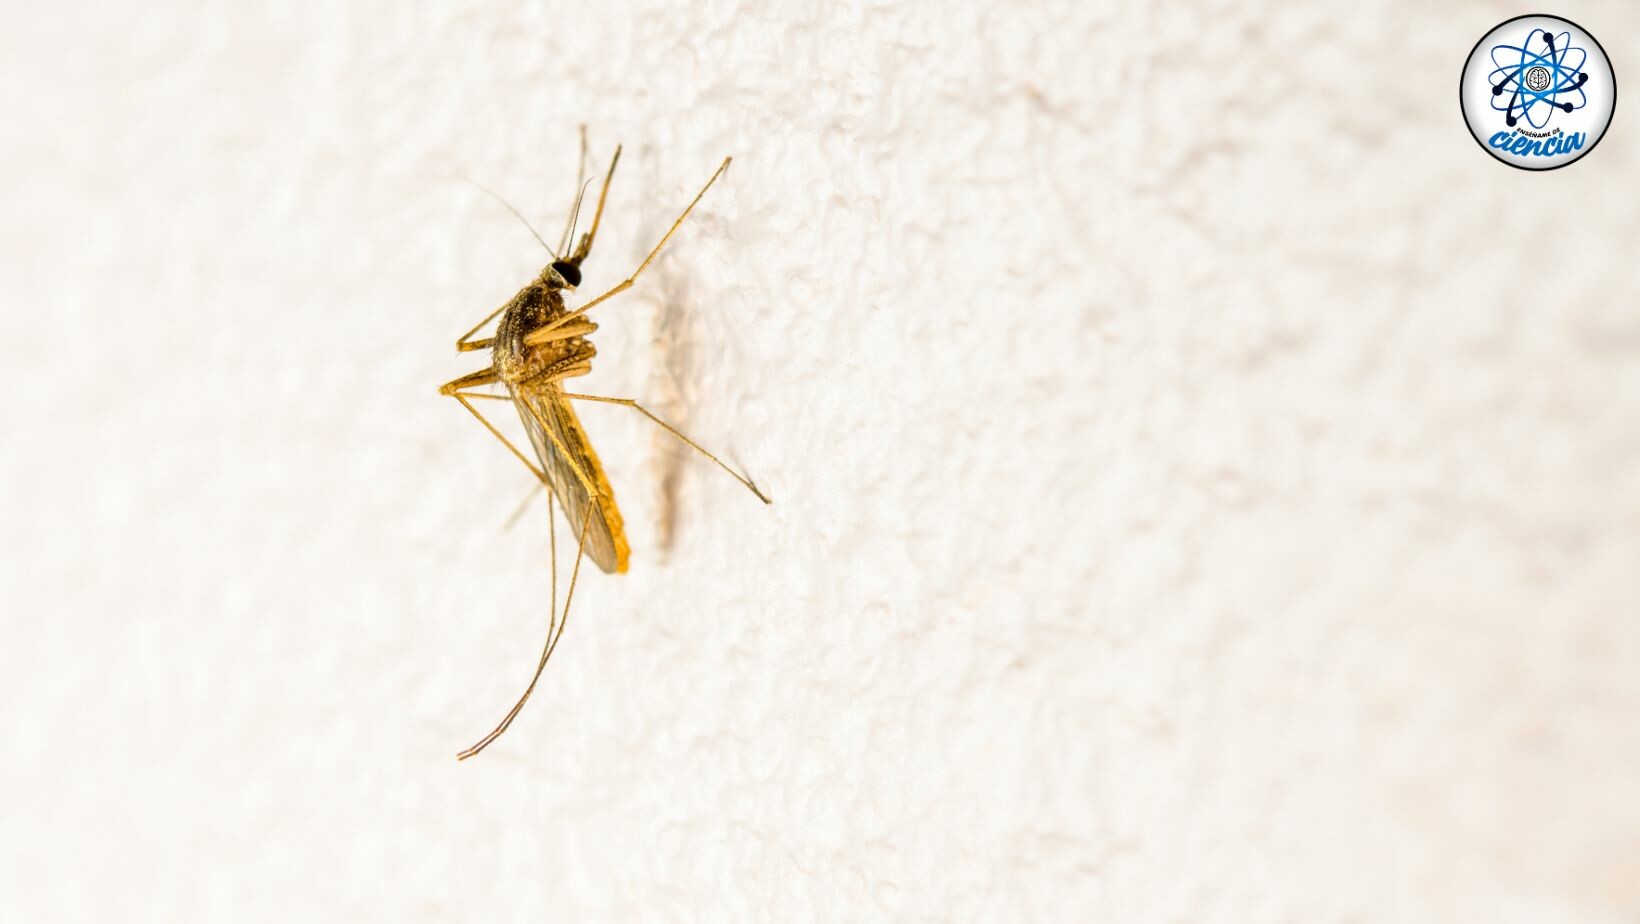 Rejtély megoldva: Most derült ki, hogy a szúnyogok miért csak néhány embert támadnak meg